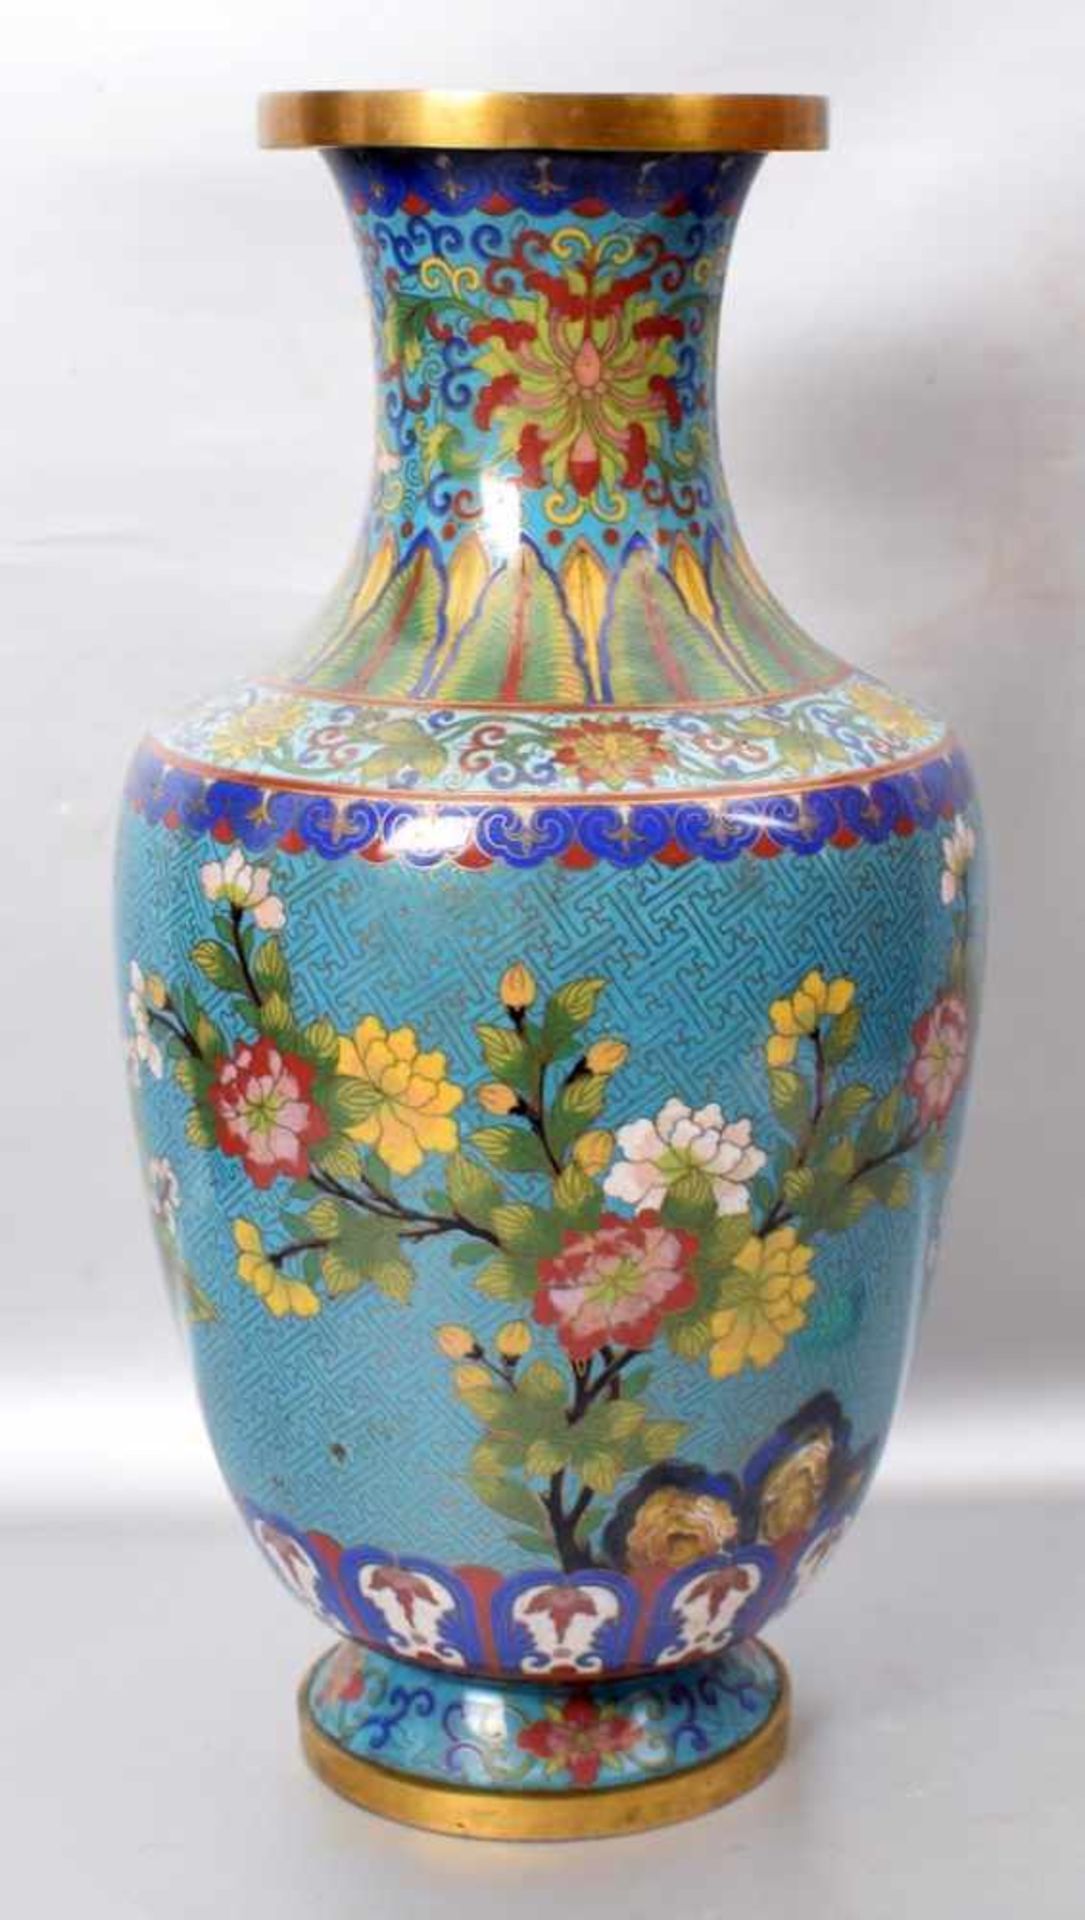 Cloisonne Vase Messing, Wandung bunt verziert, mit asiatischen Blüten und Ornamenten, H 41 cm